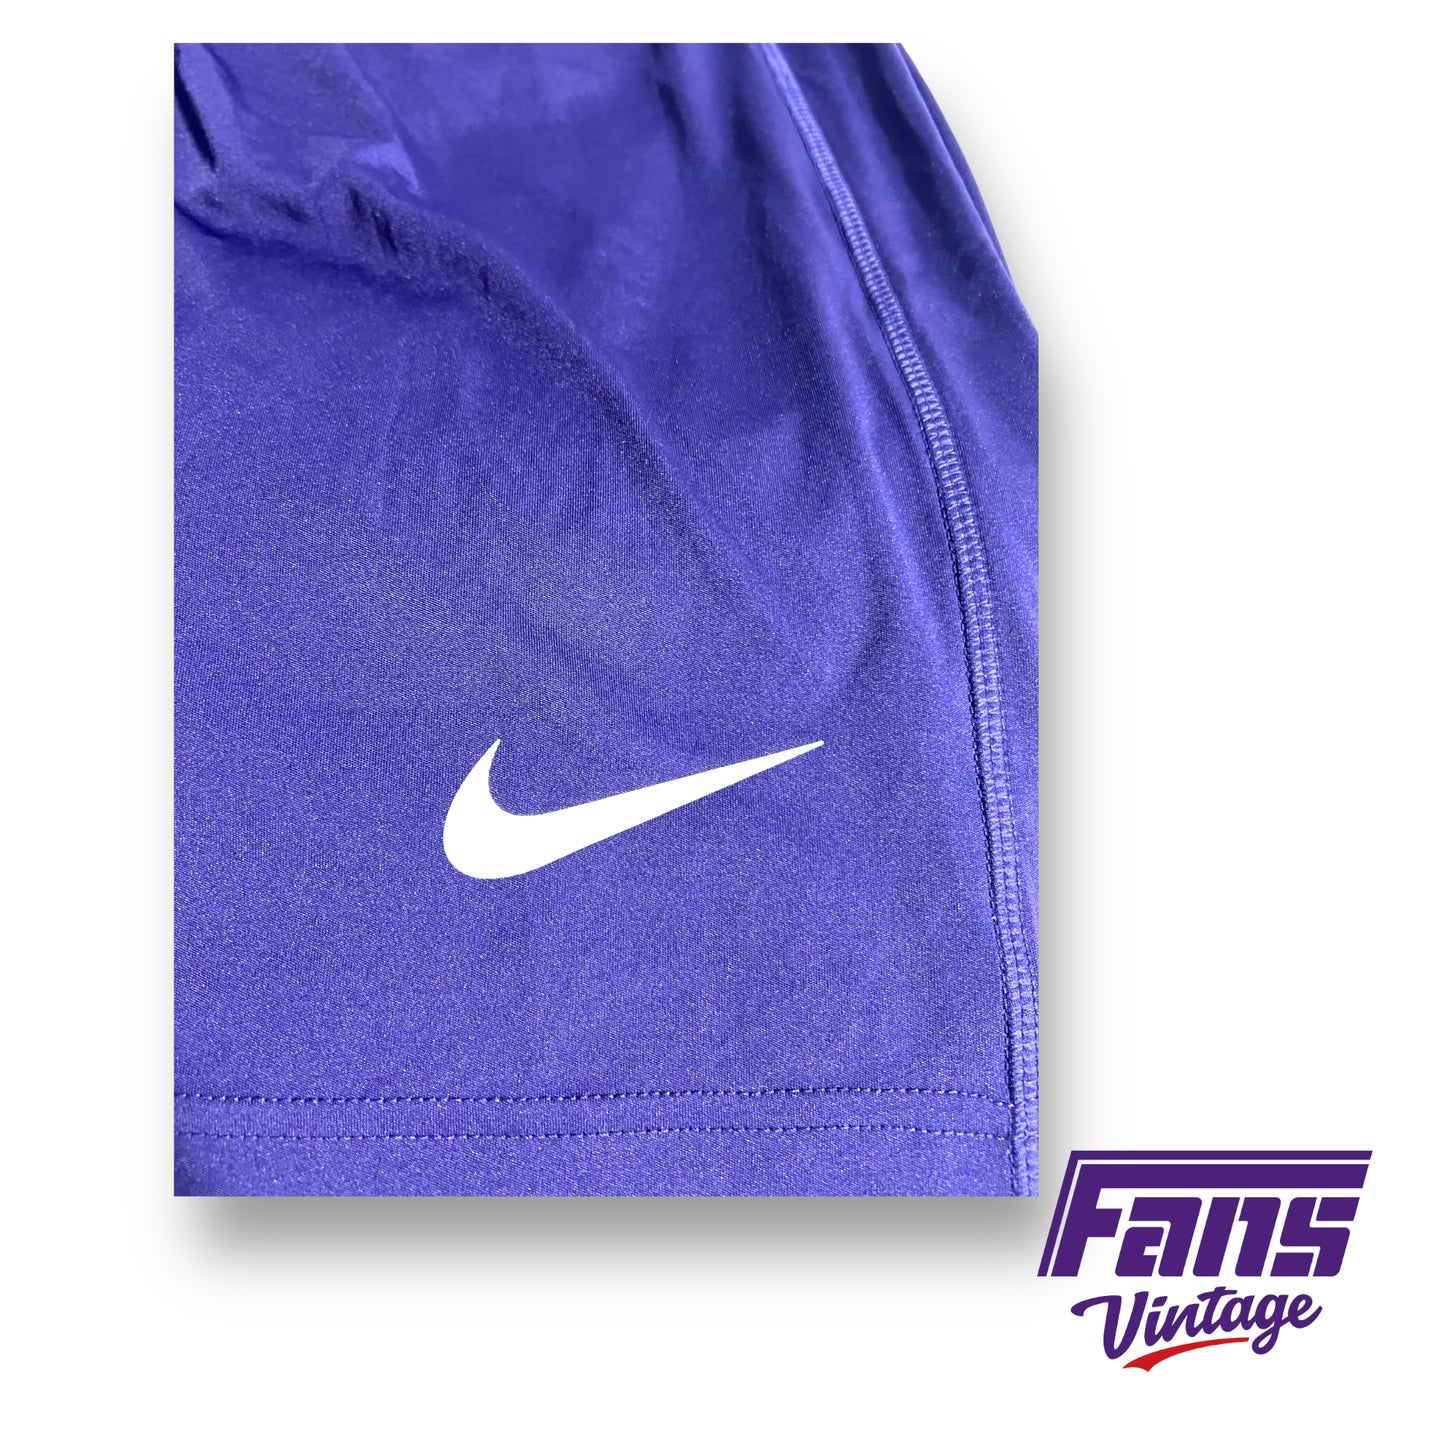 Nike TCU Baseball team issued shorts